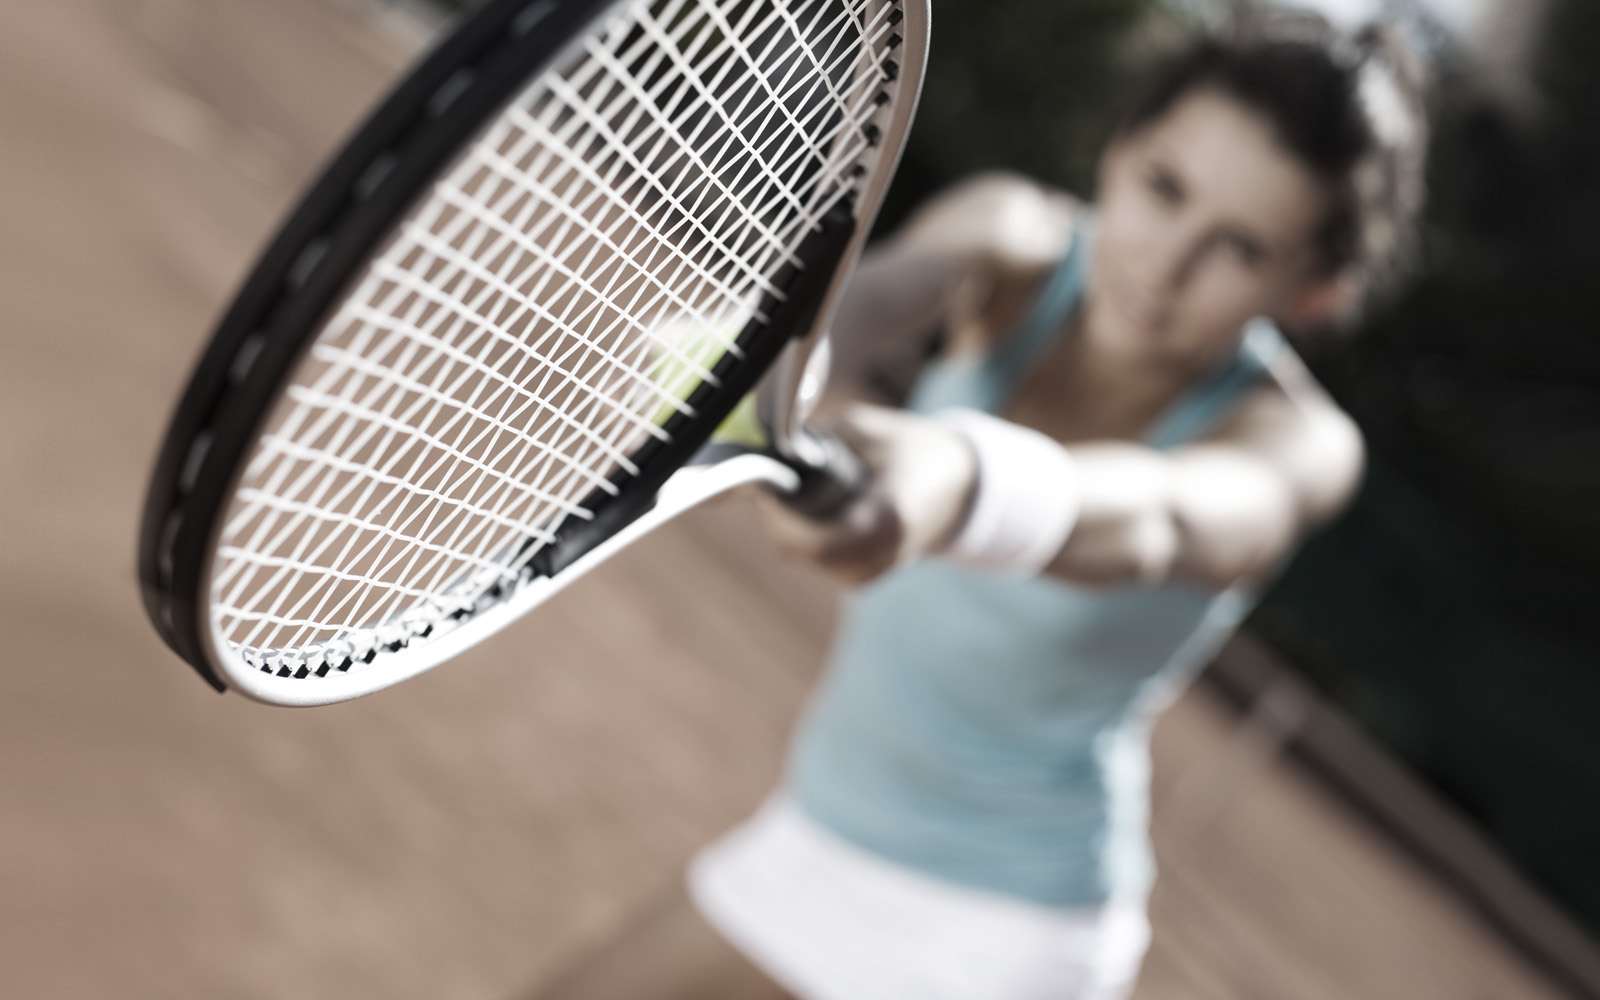 You can play tennis your. Девушка играет в теннис. Девушка играет в теннис фото. Девушка играет в теннис Сток. Теннисистка в полный рост.